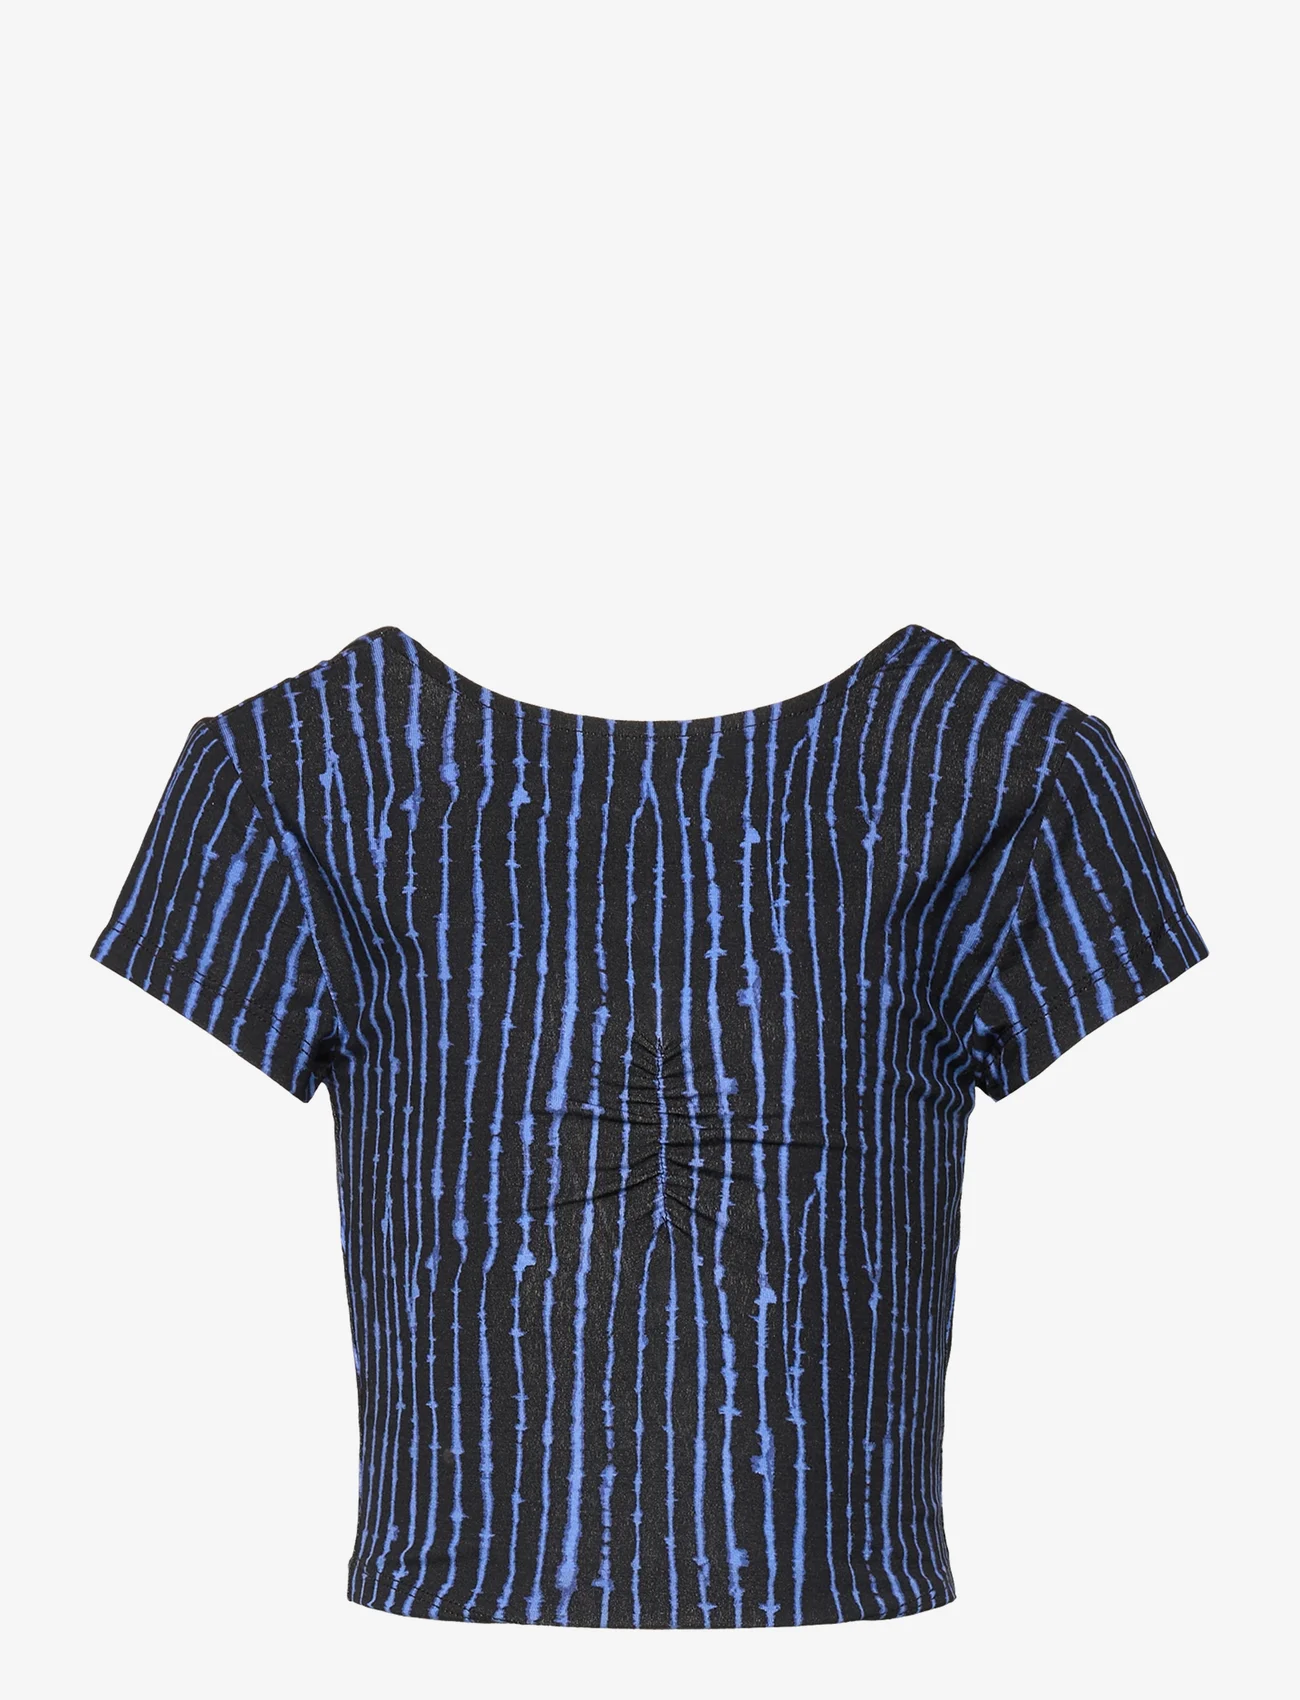 Rosemunde Kids - Viscose t-shirt - kurzärmelige - blue uneven stripe print - 0